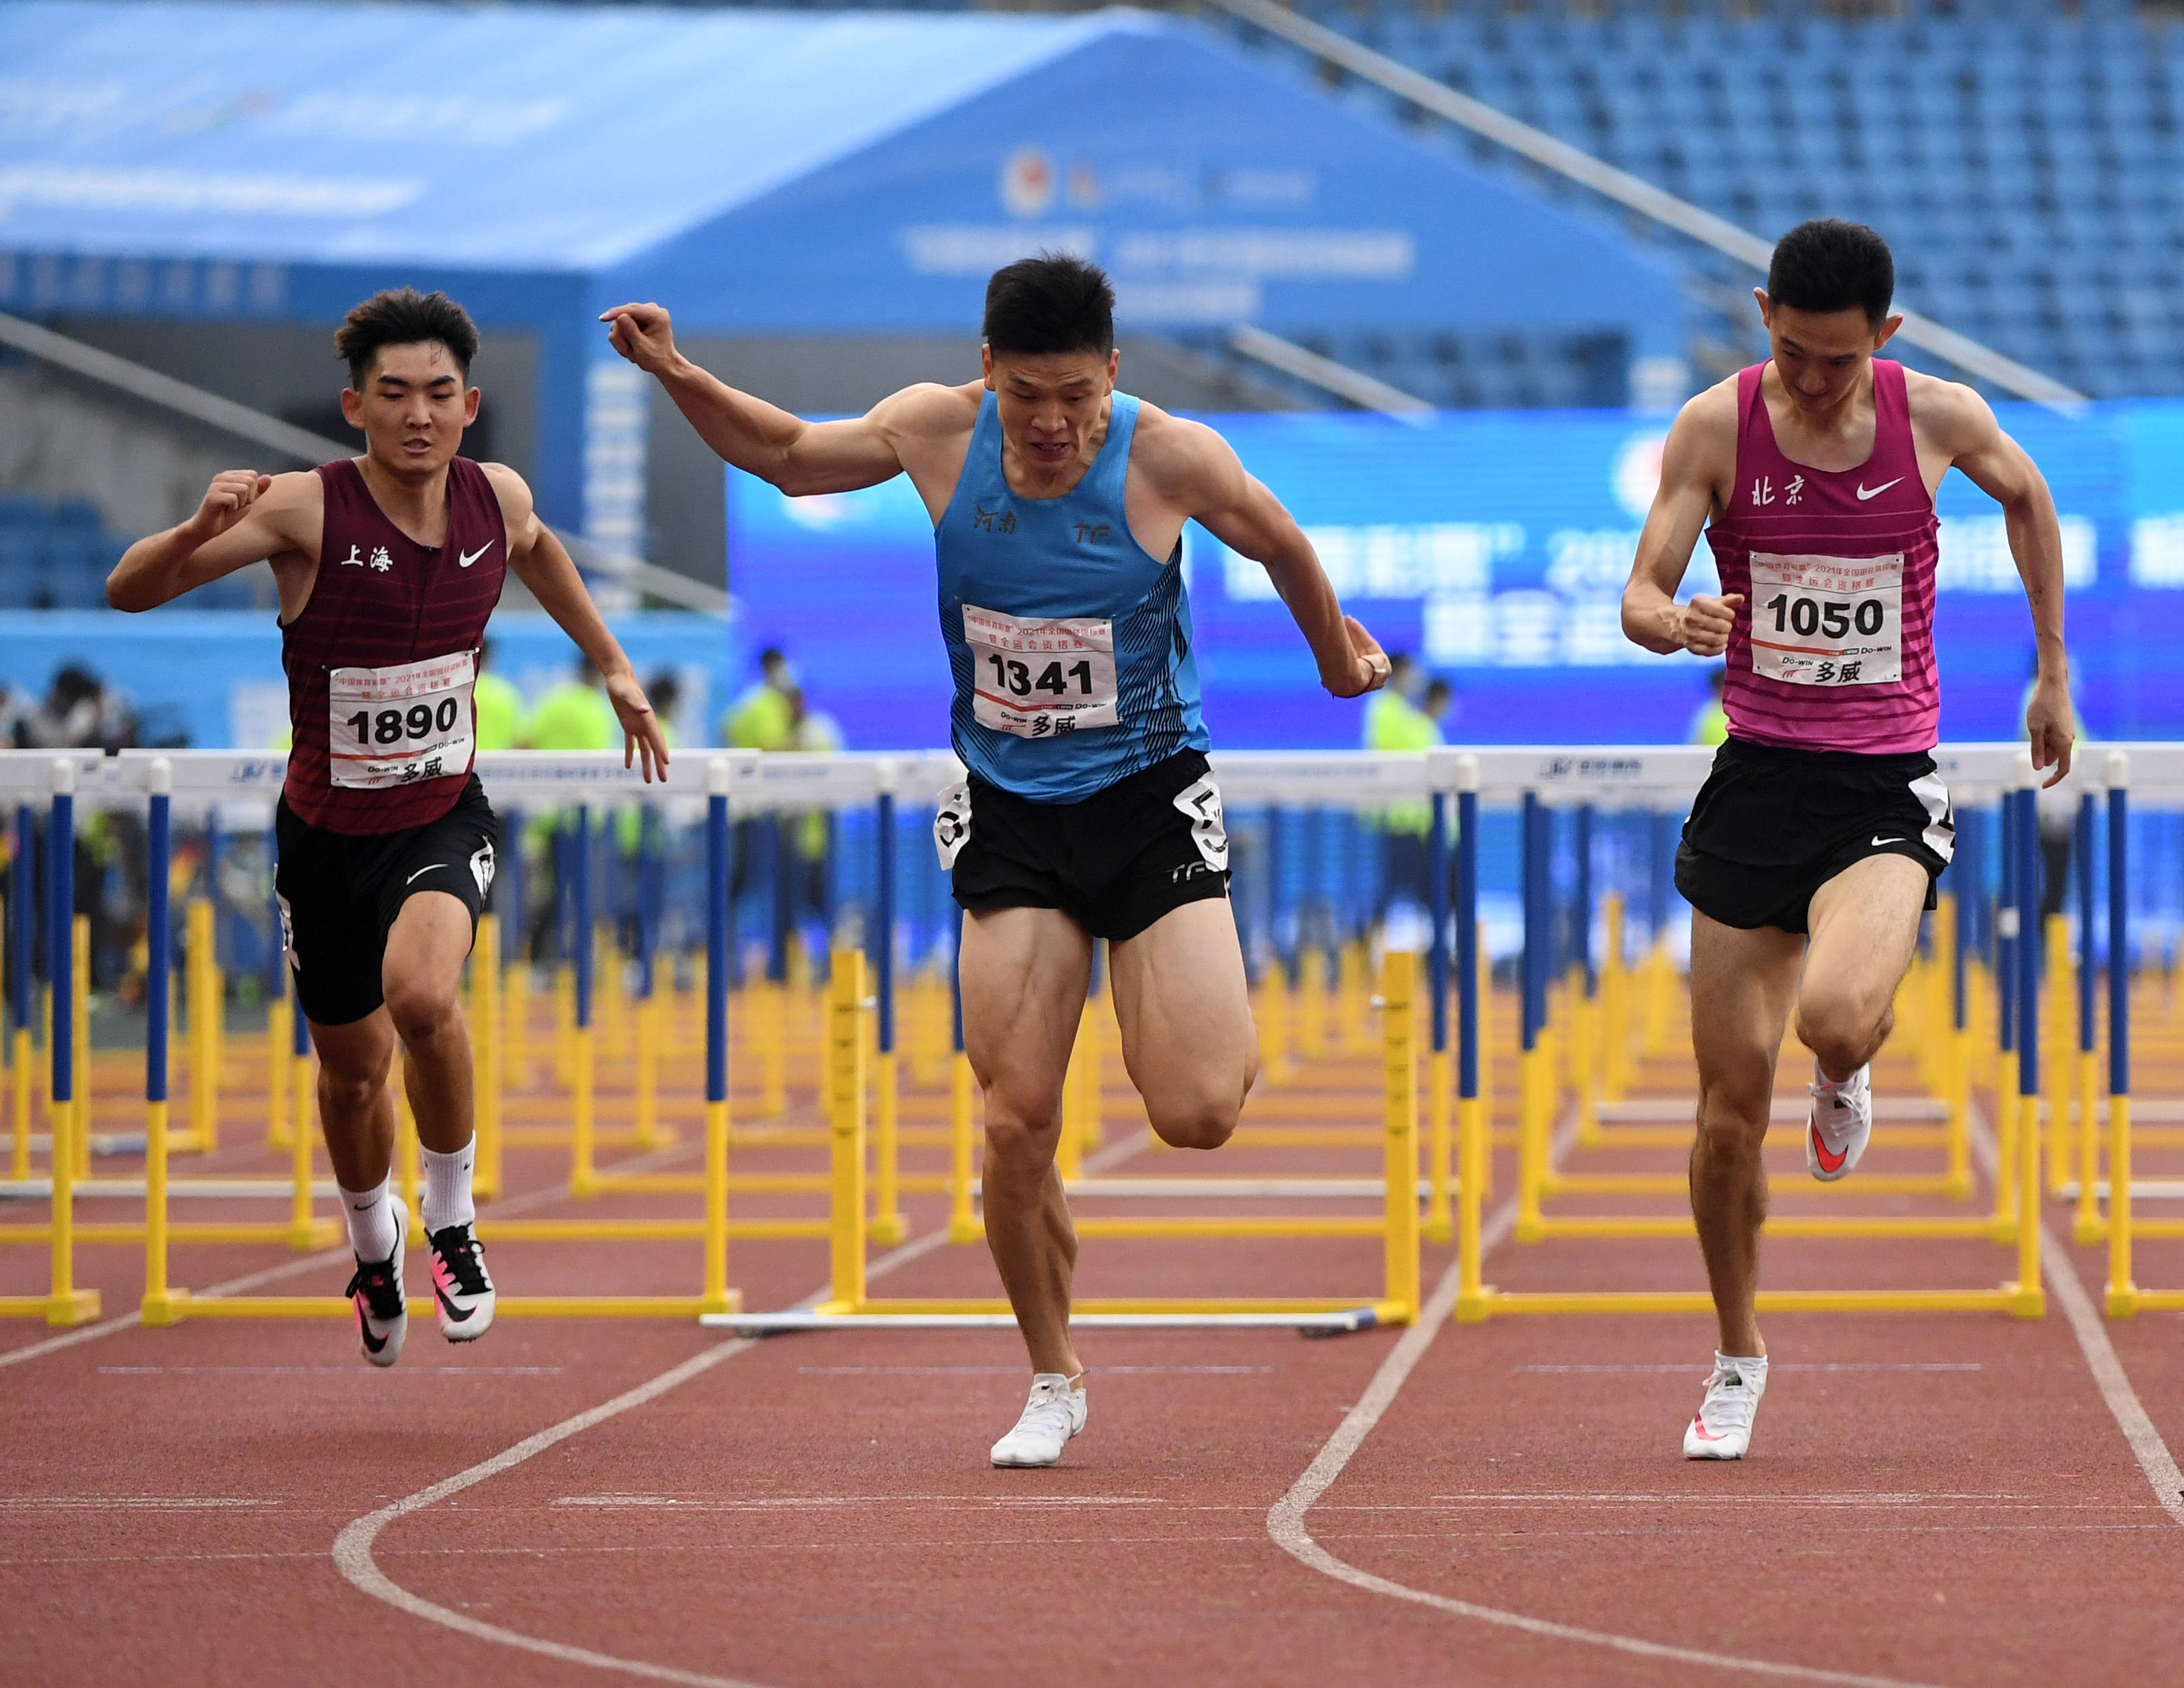 田径——全国锦标赛:男子110米栏决赛赛况